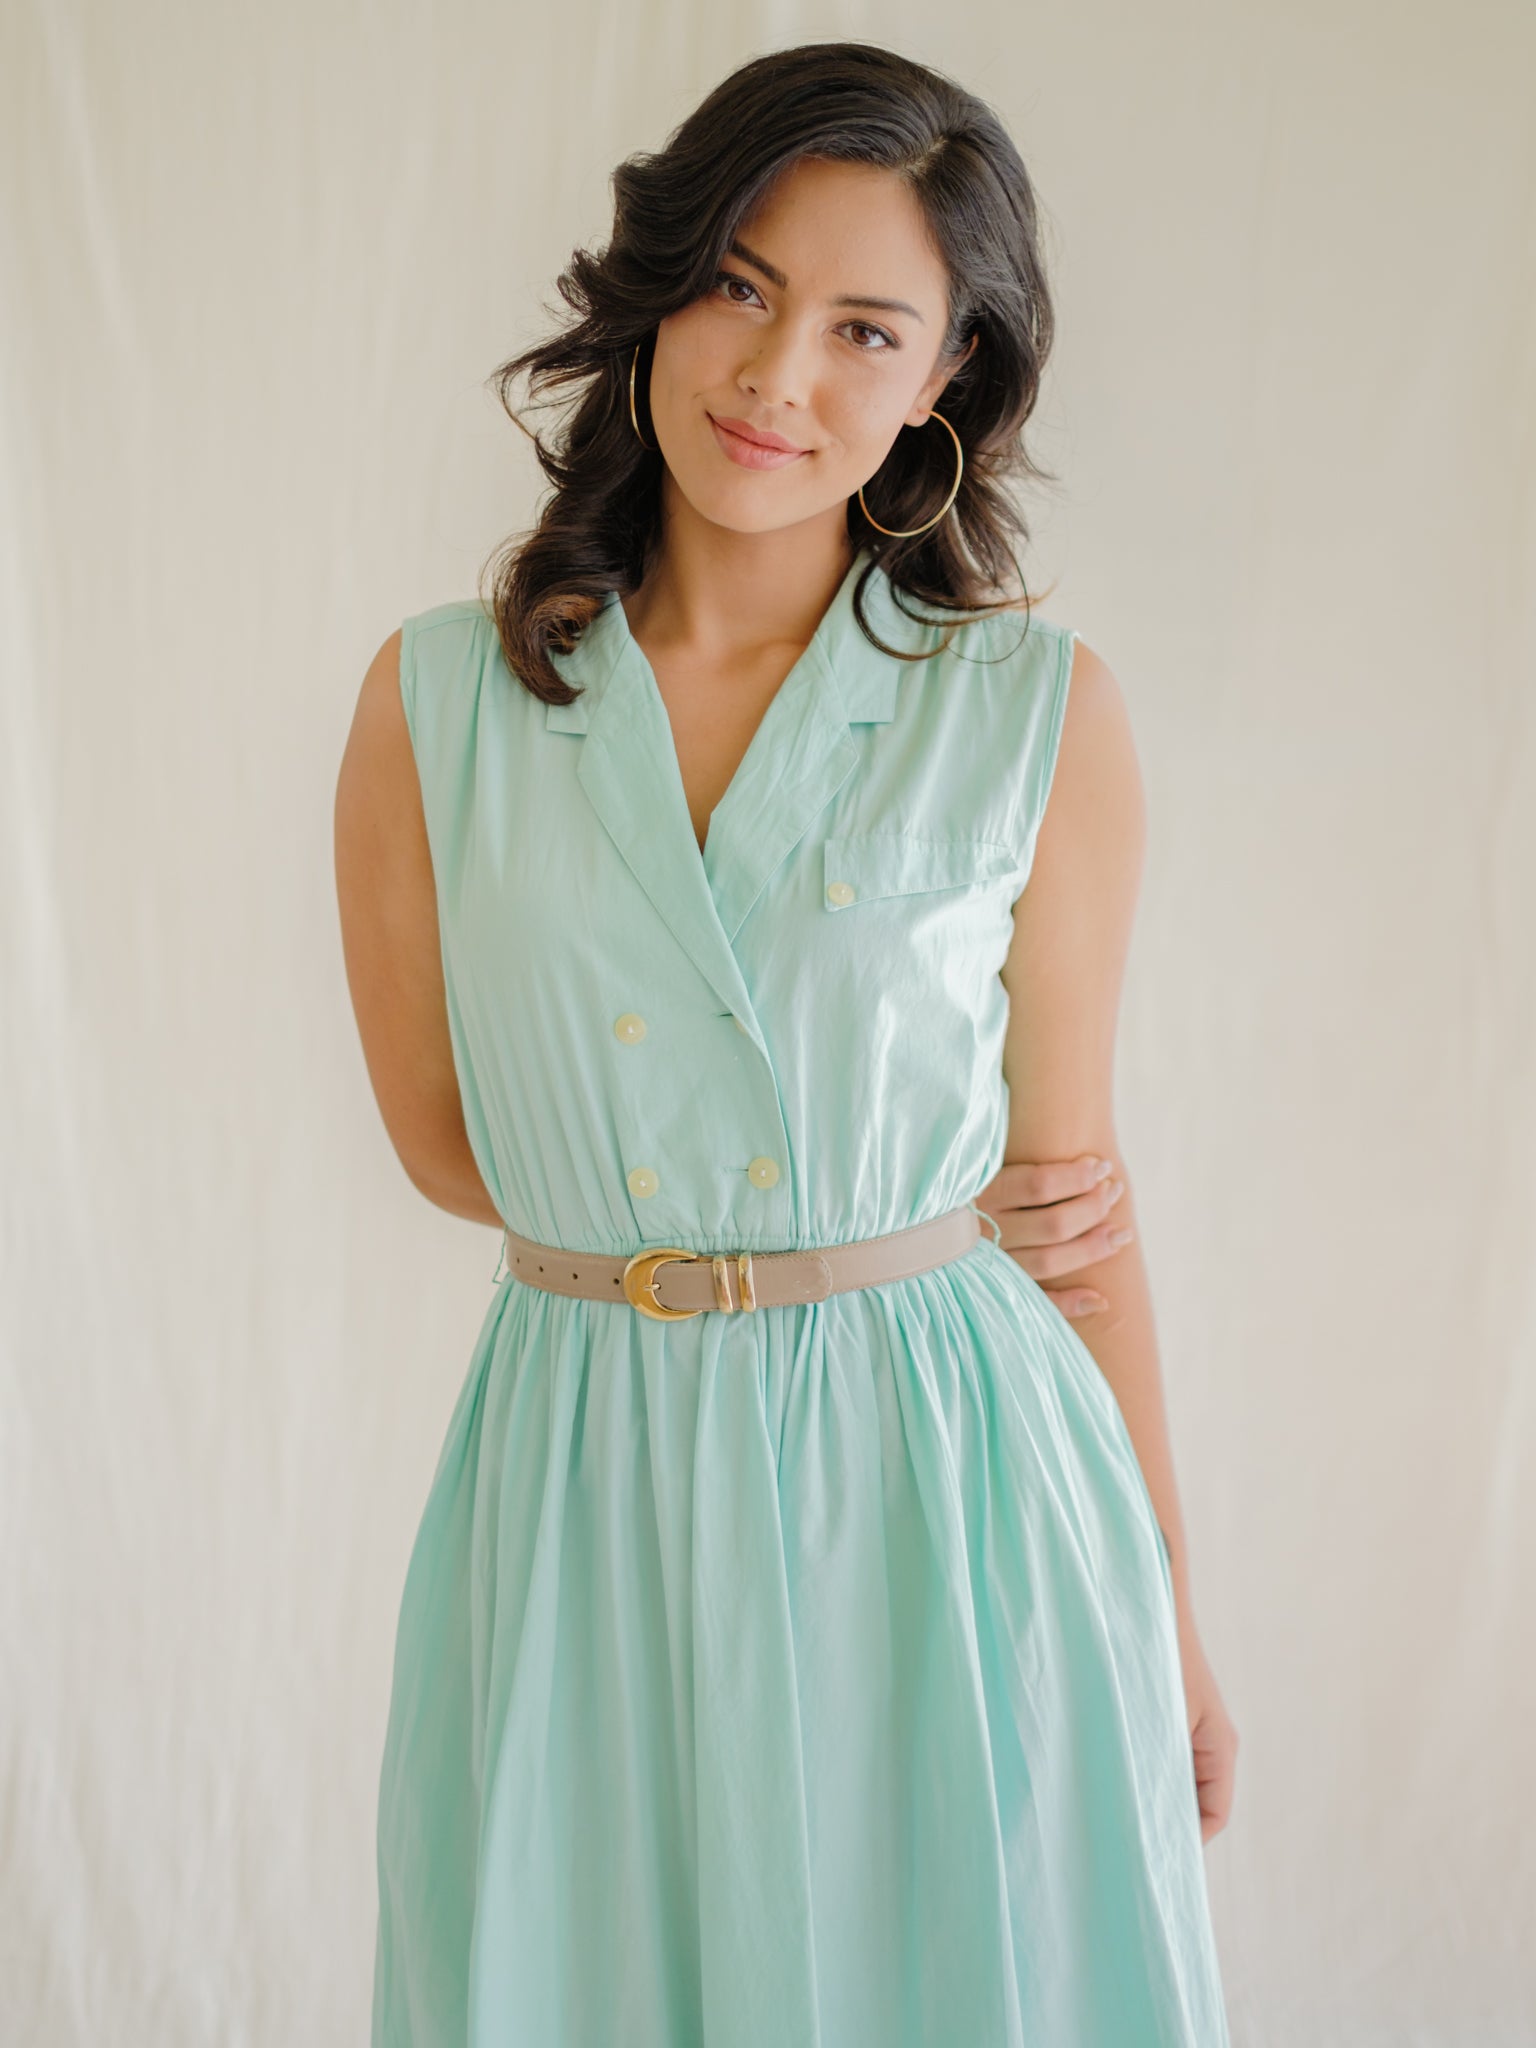 Mint shirtwaist vintage day dress